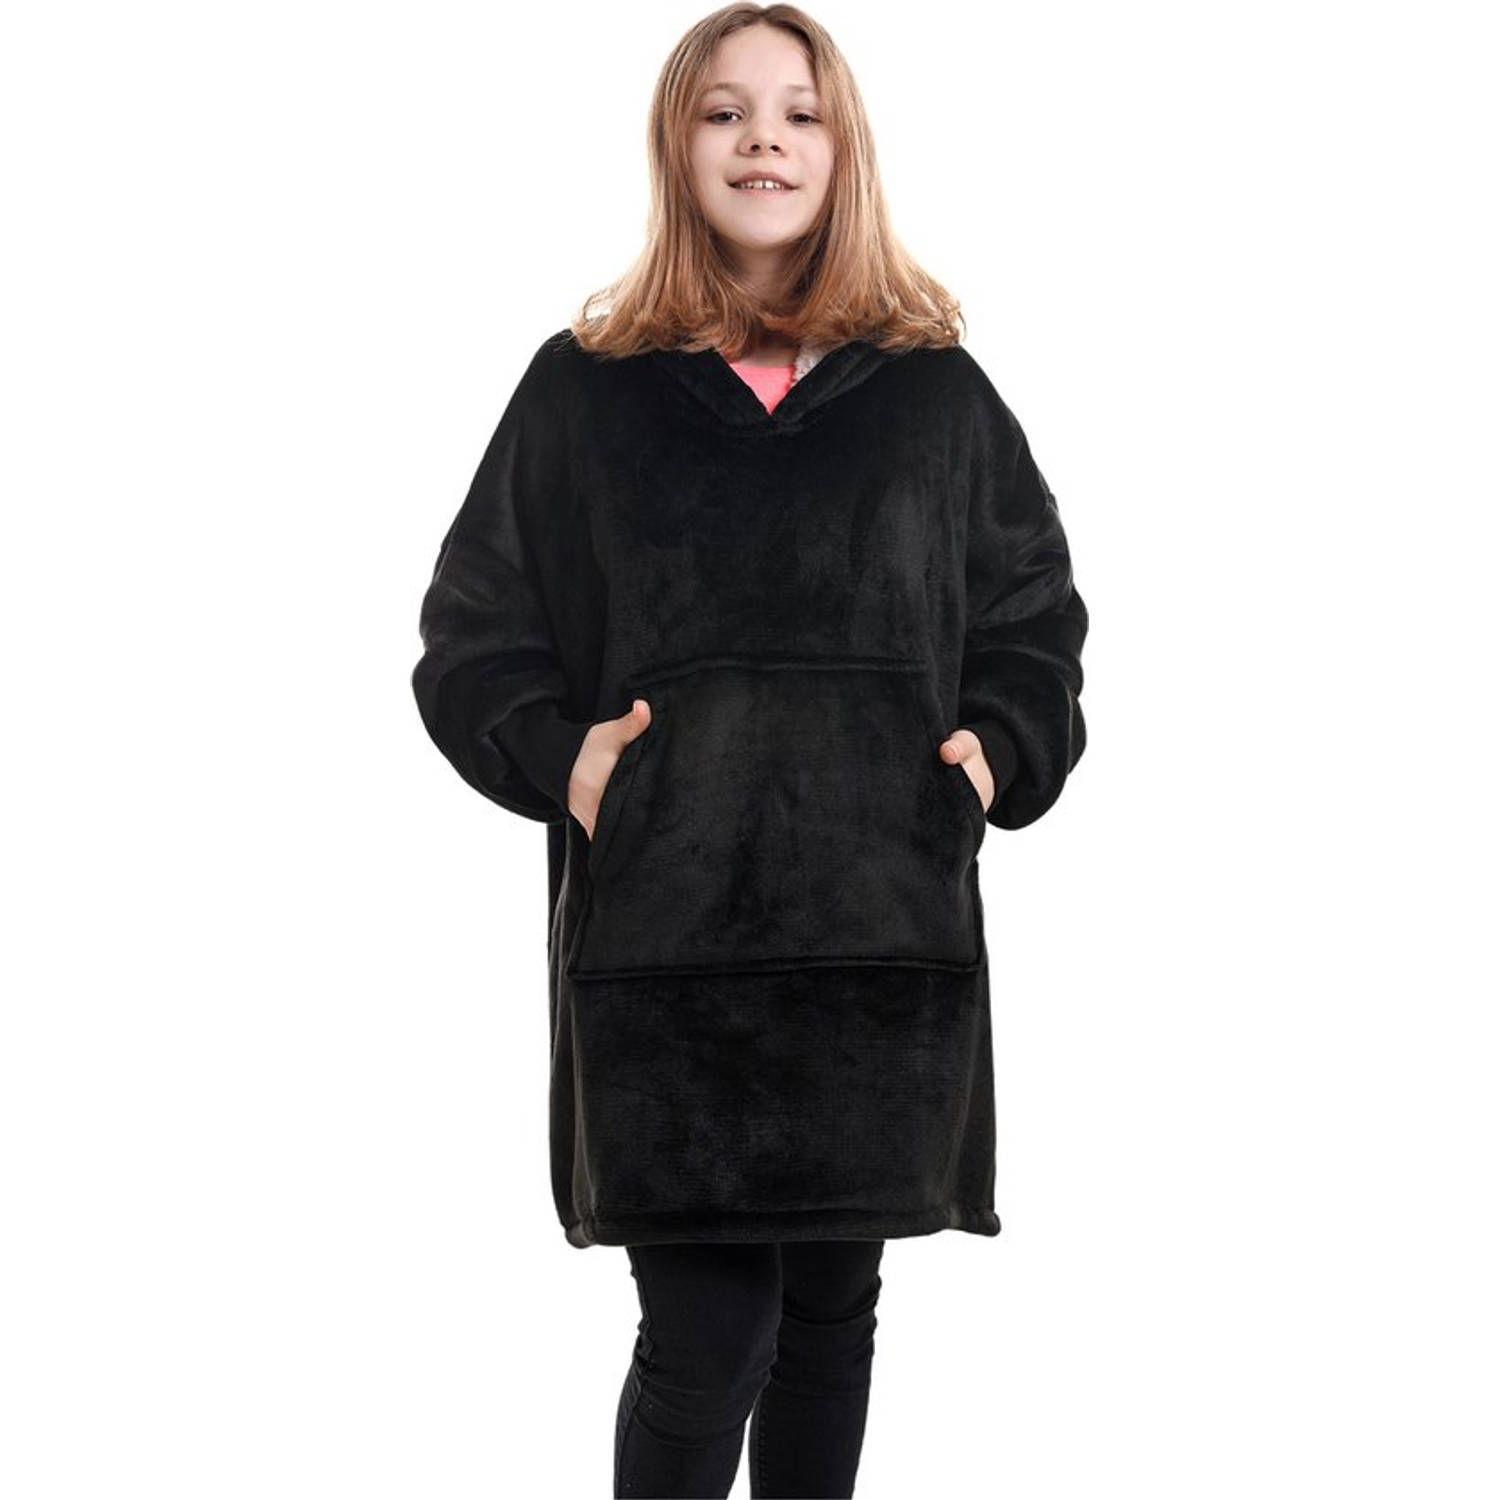 Noony black hoodie deken kinderen - fleece deken met mouwen - ultrazachte binnenkant - snuggie - one size fits all - oodie kids - energie besparen